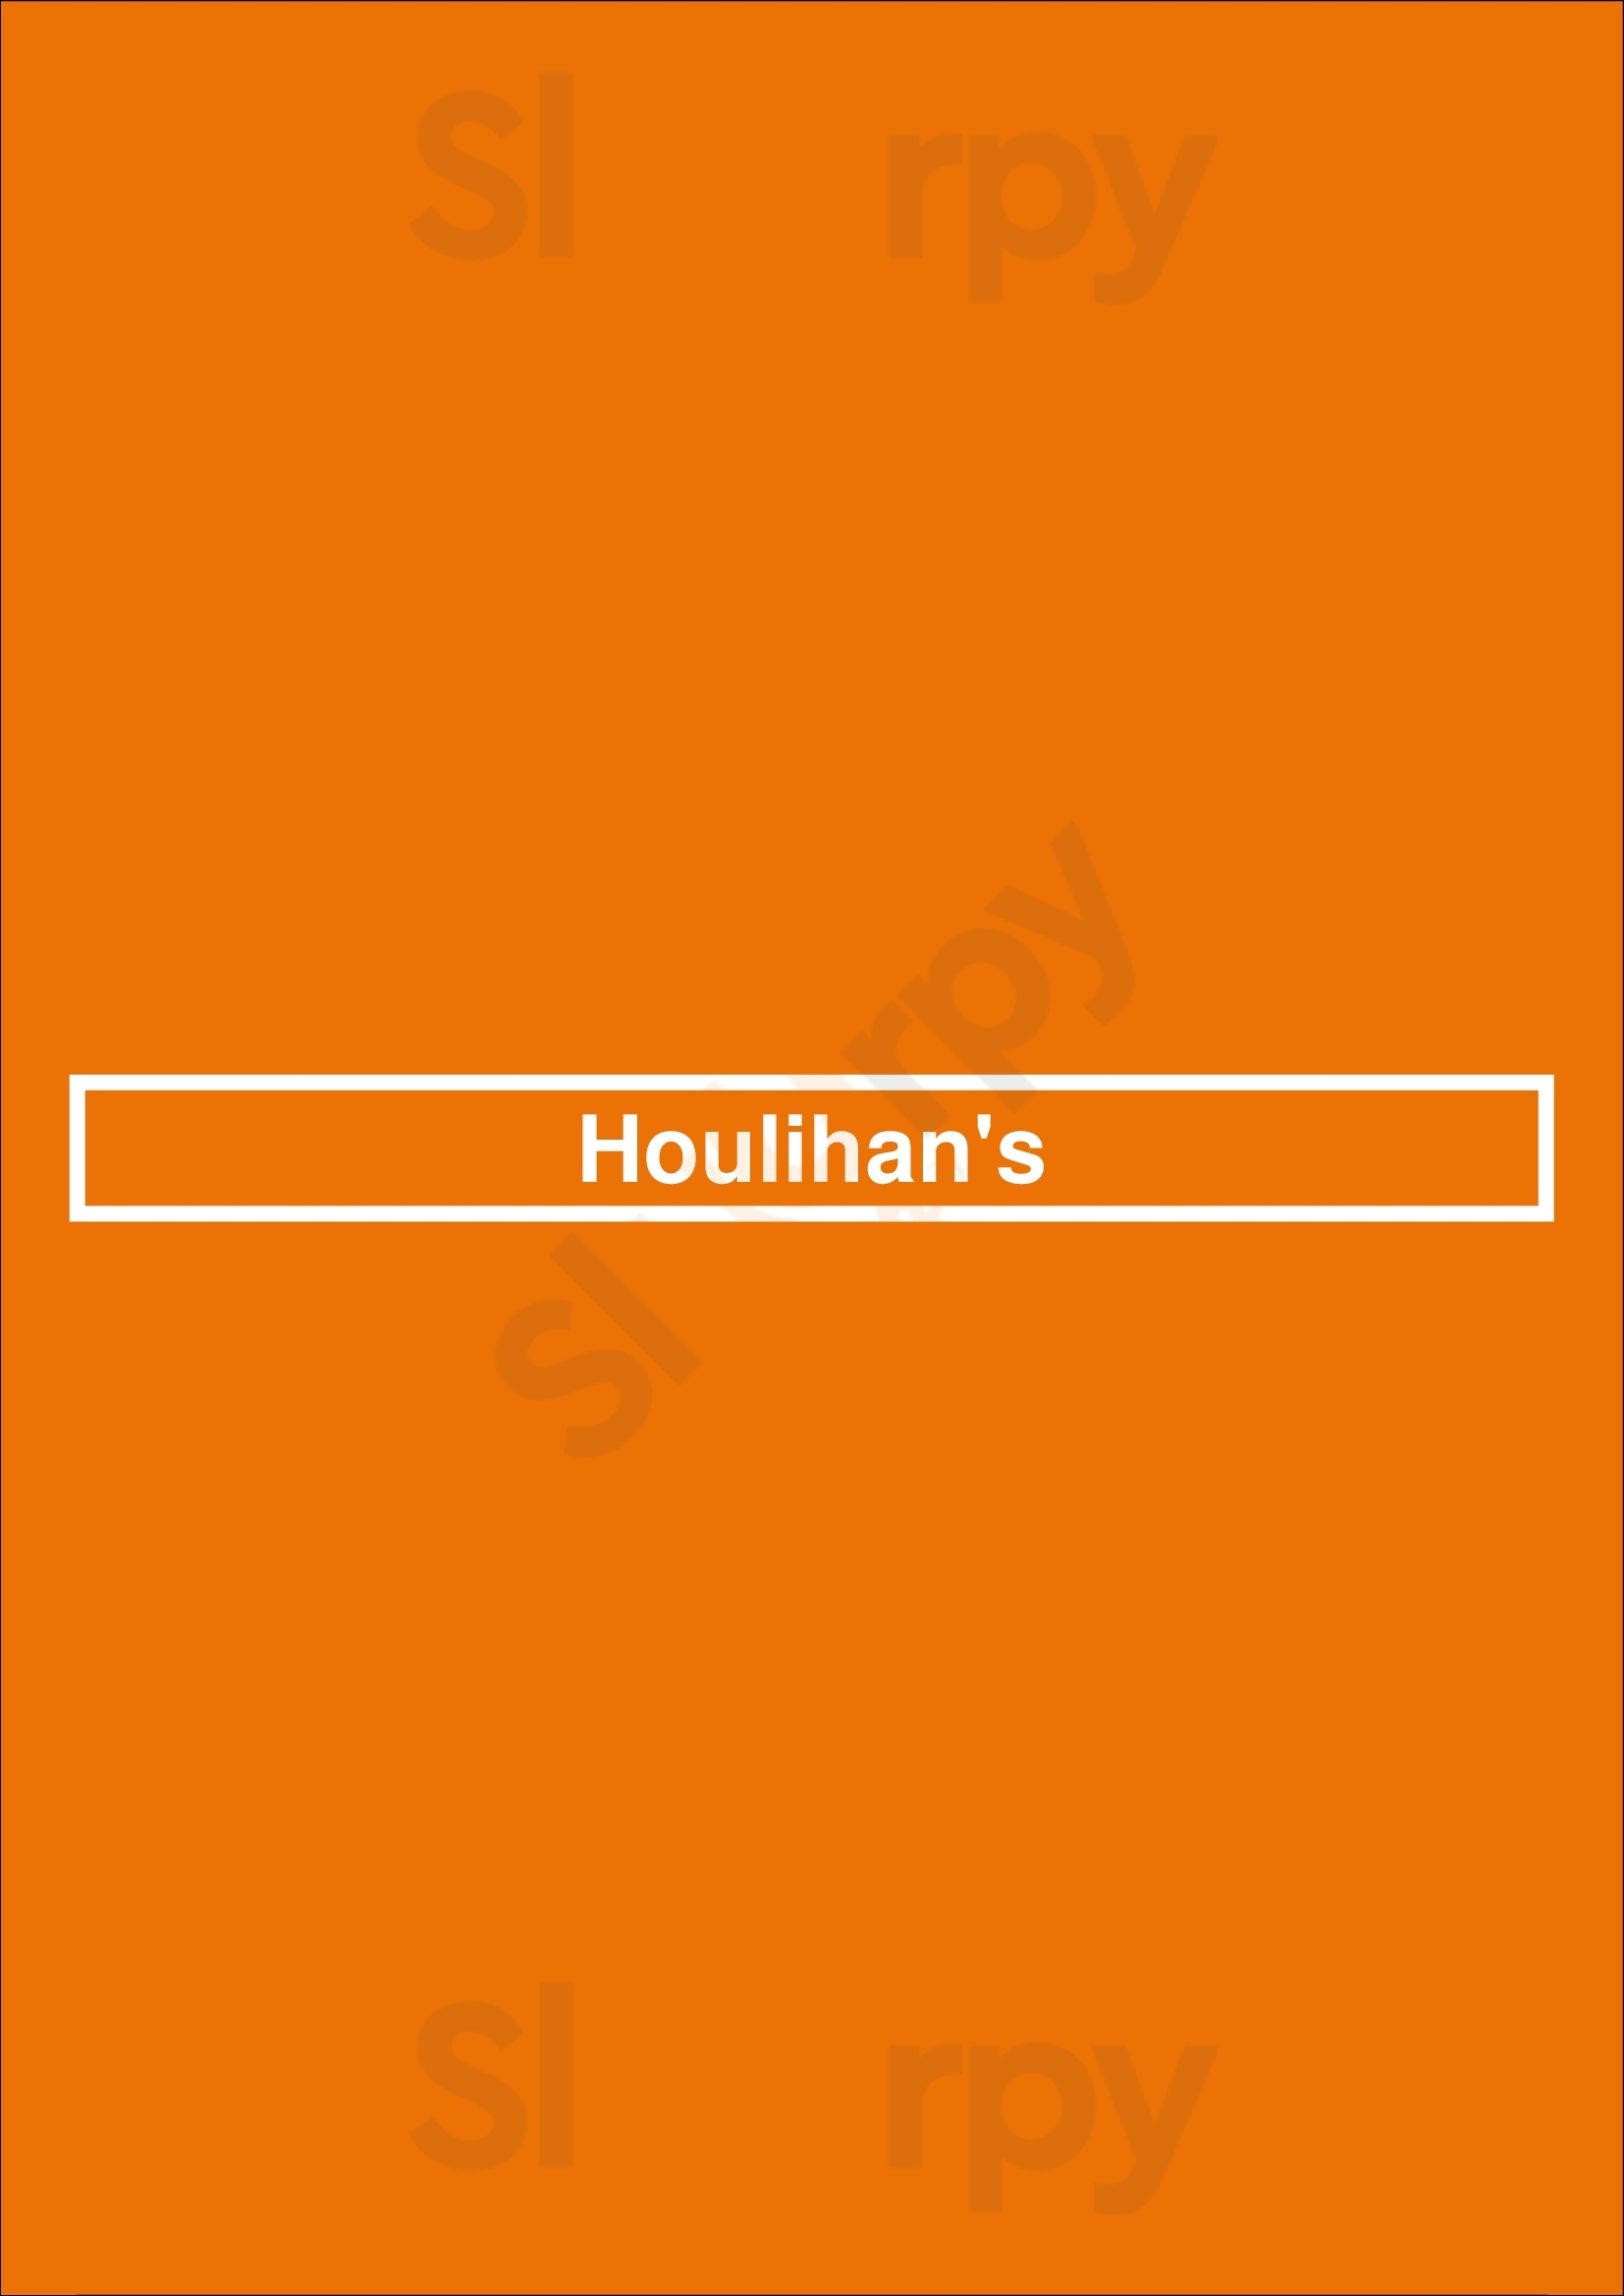 Houlihan's Columbia Menu - 1